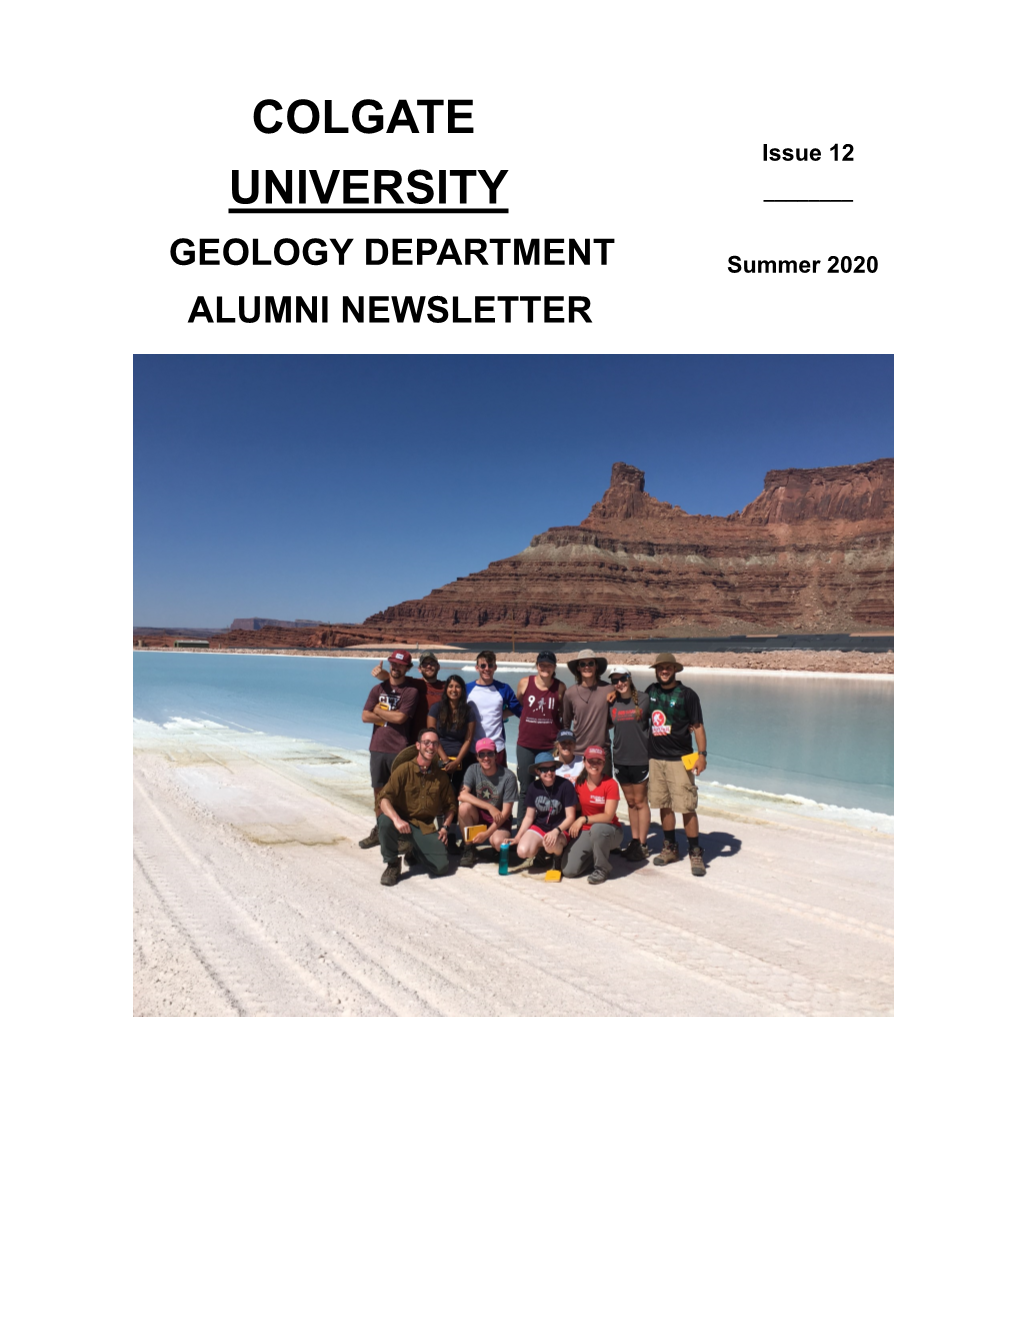 2020 Alumni Newsletter